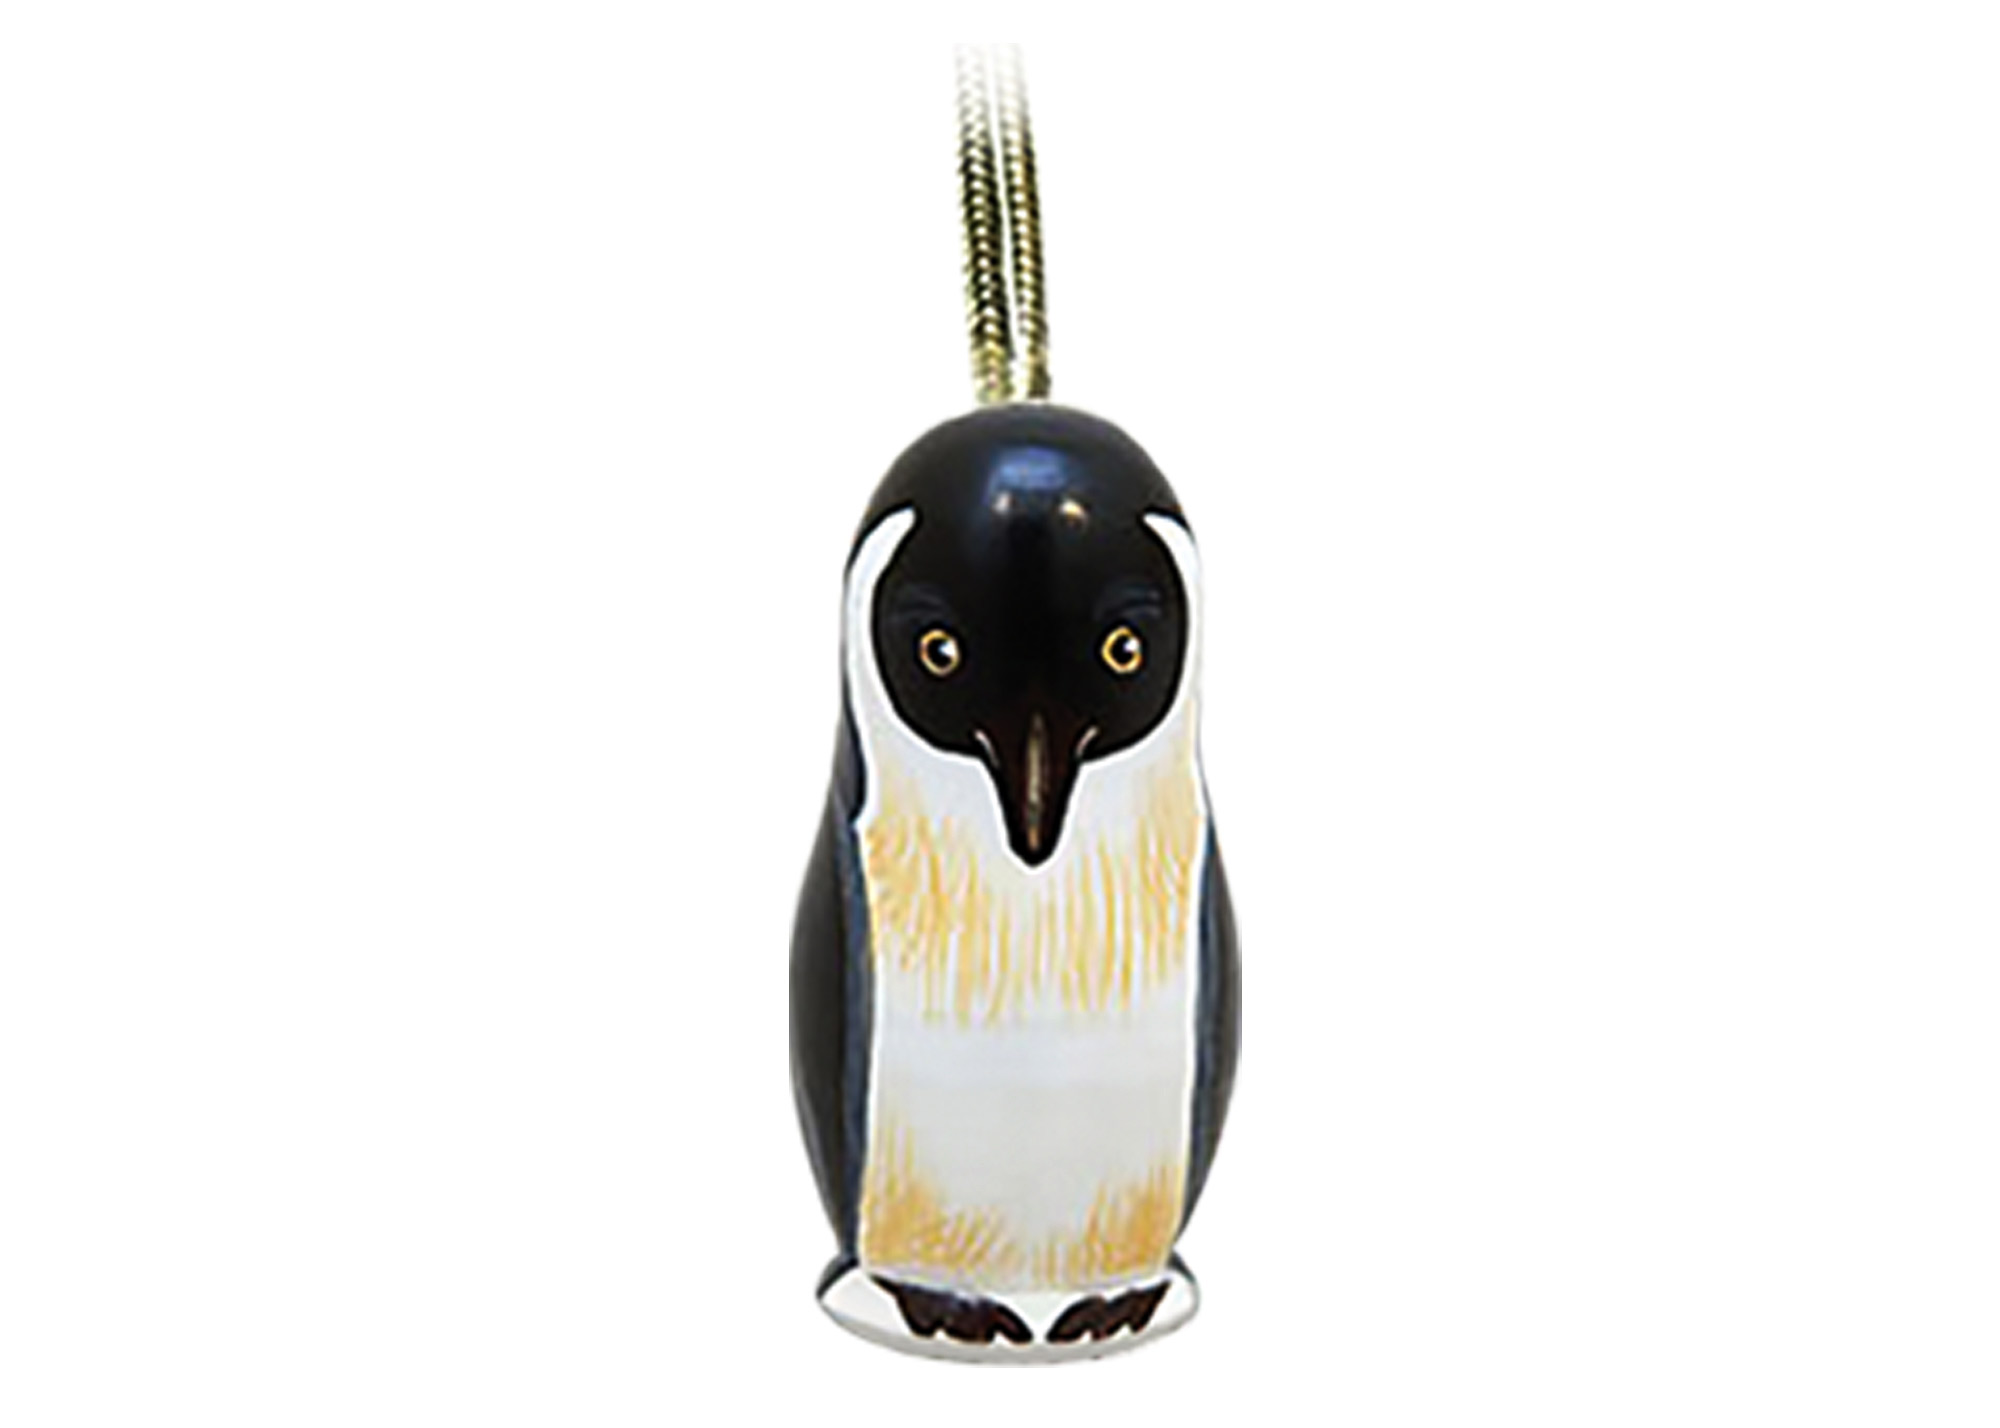 Buy Penguin Mini Realistic Ornament 2" at GoldenCockerel.com